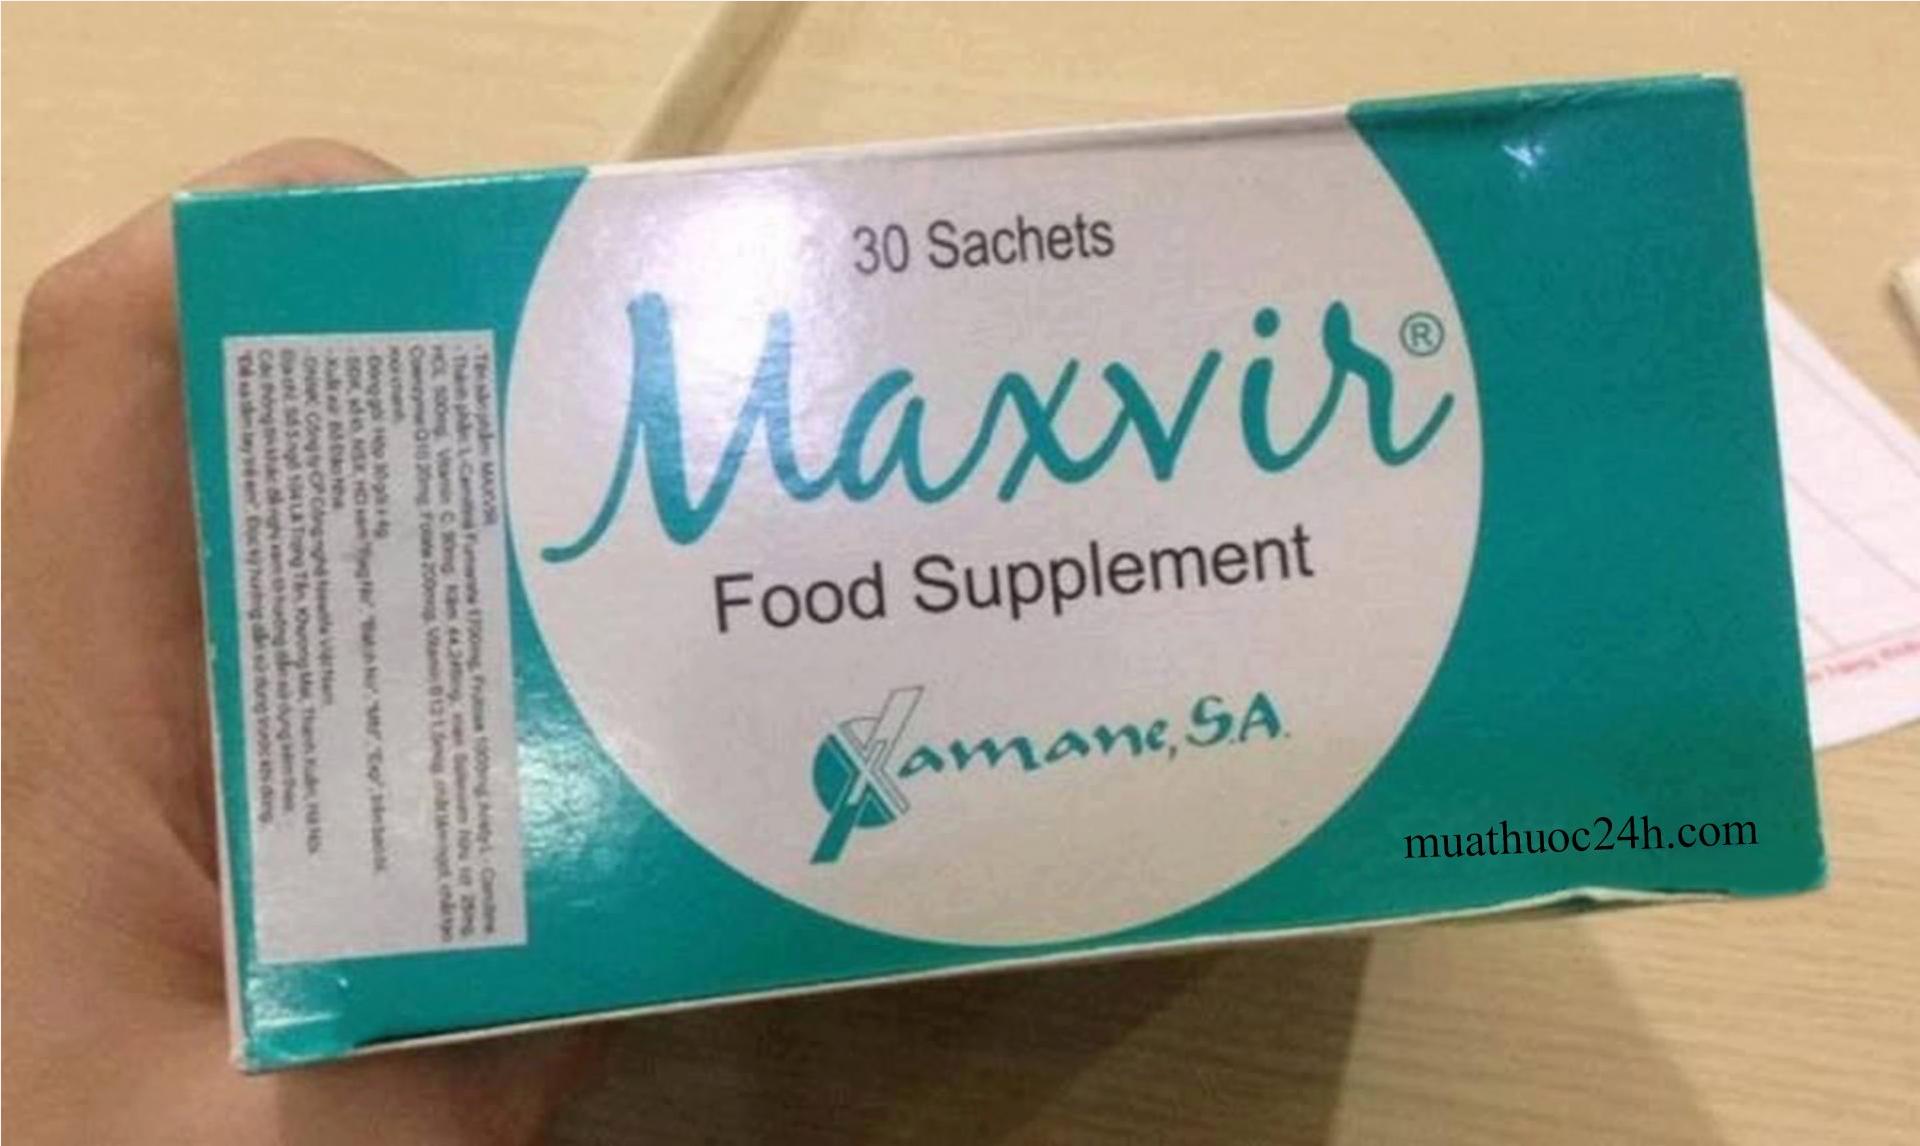 Thuốc maxvir food supplement mua ở đâu, giá thuốc maxvir dạng gói